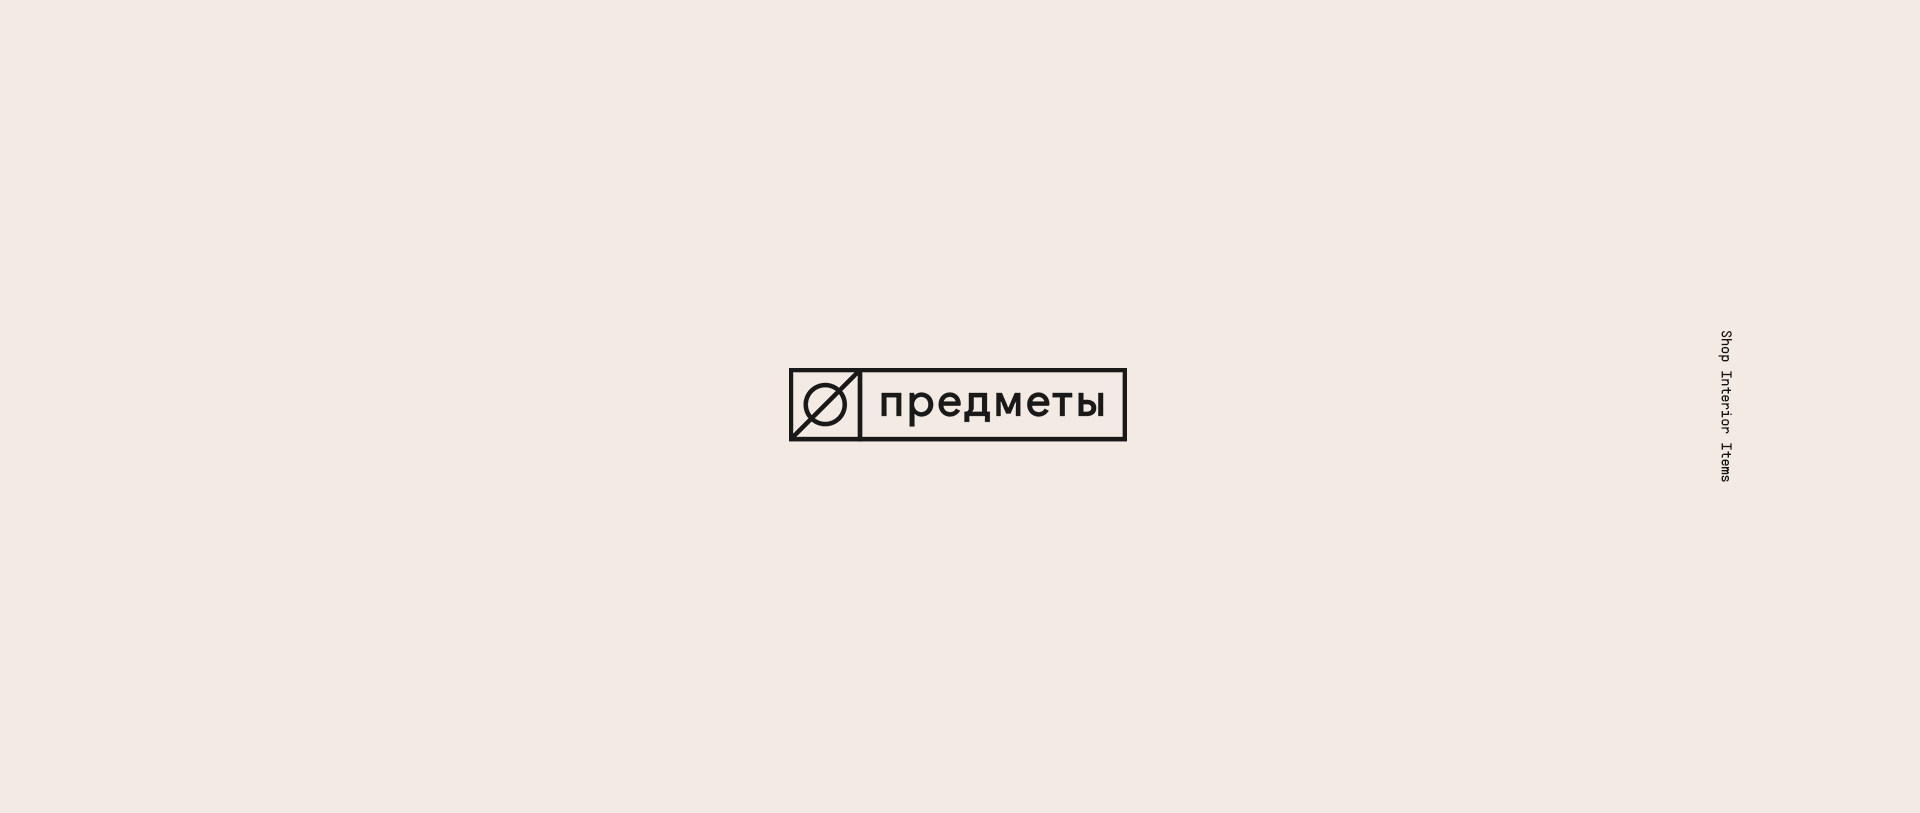 Logotyposhnaya: 50 Logotypes in 32 Hours